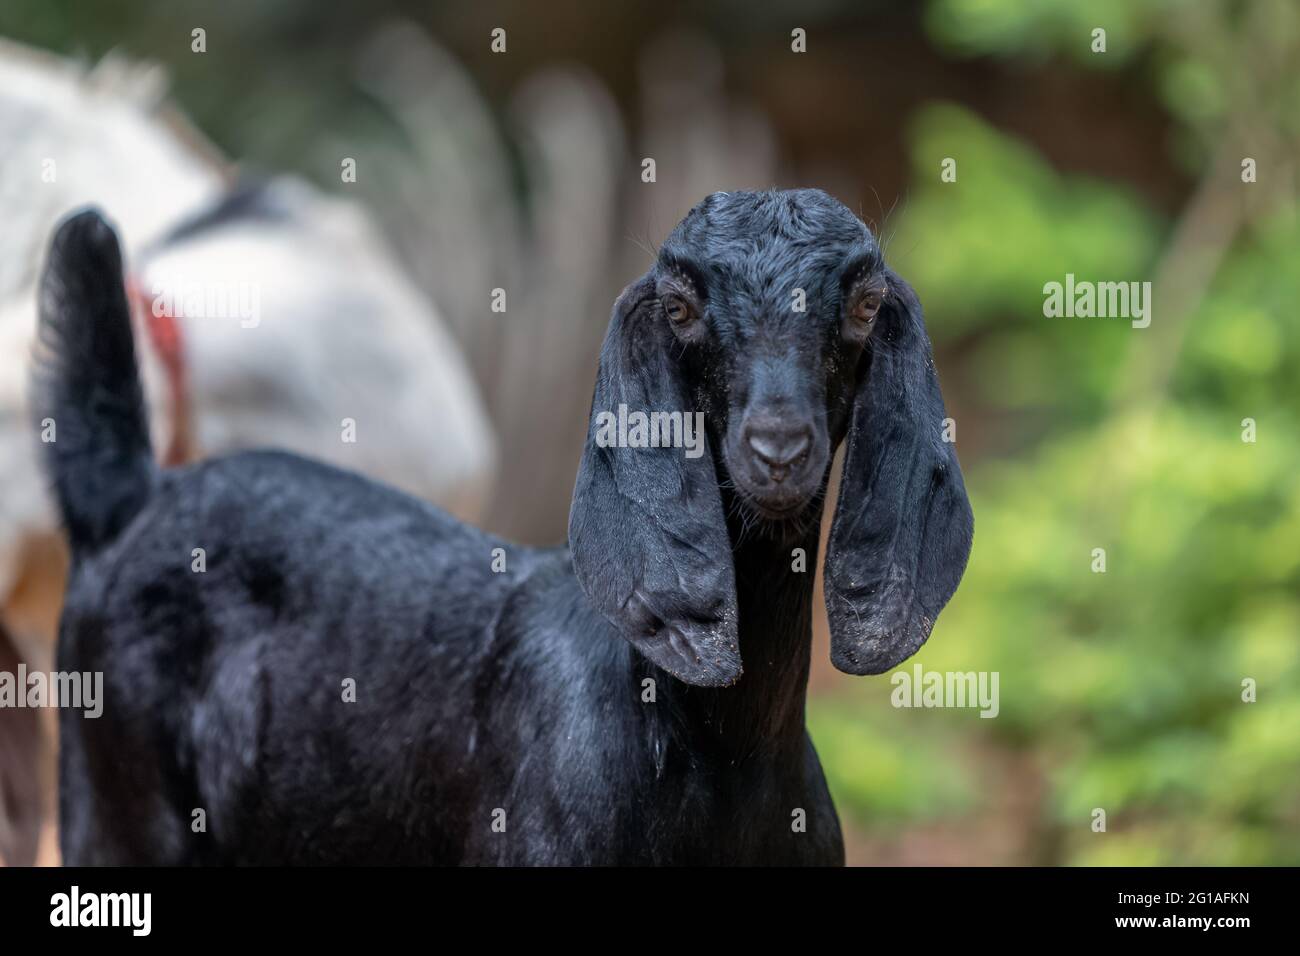 Retrato de una joven cabra negra en la granja. Foto de stock